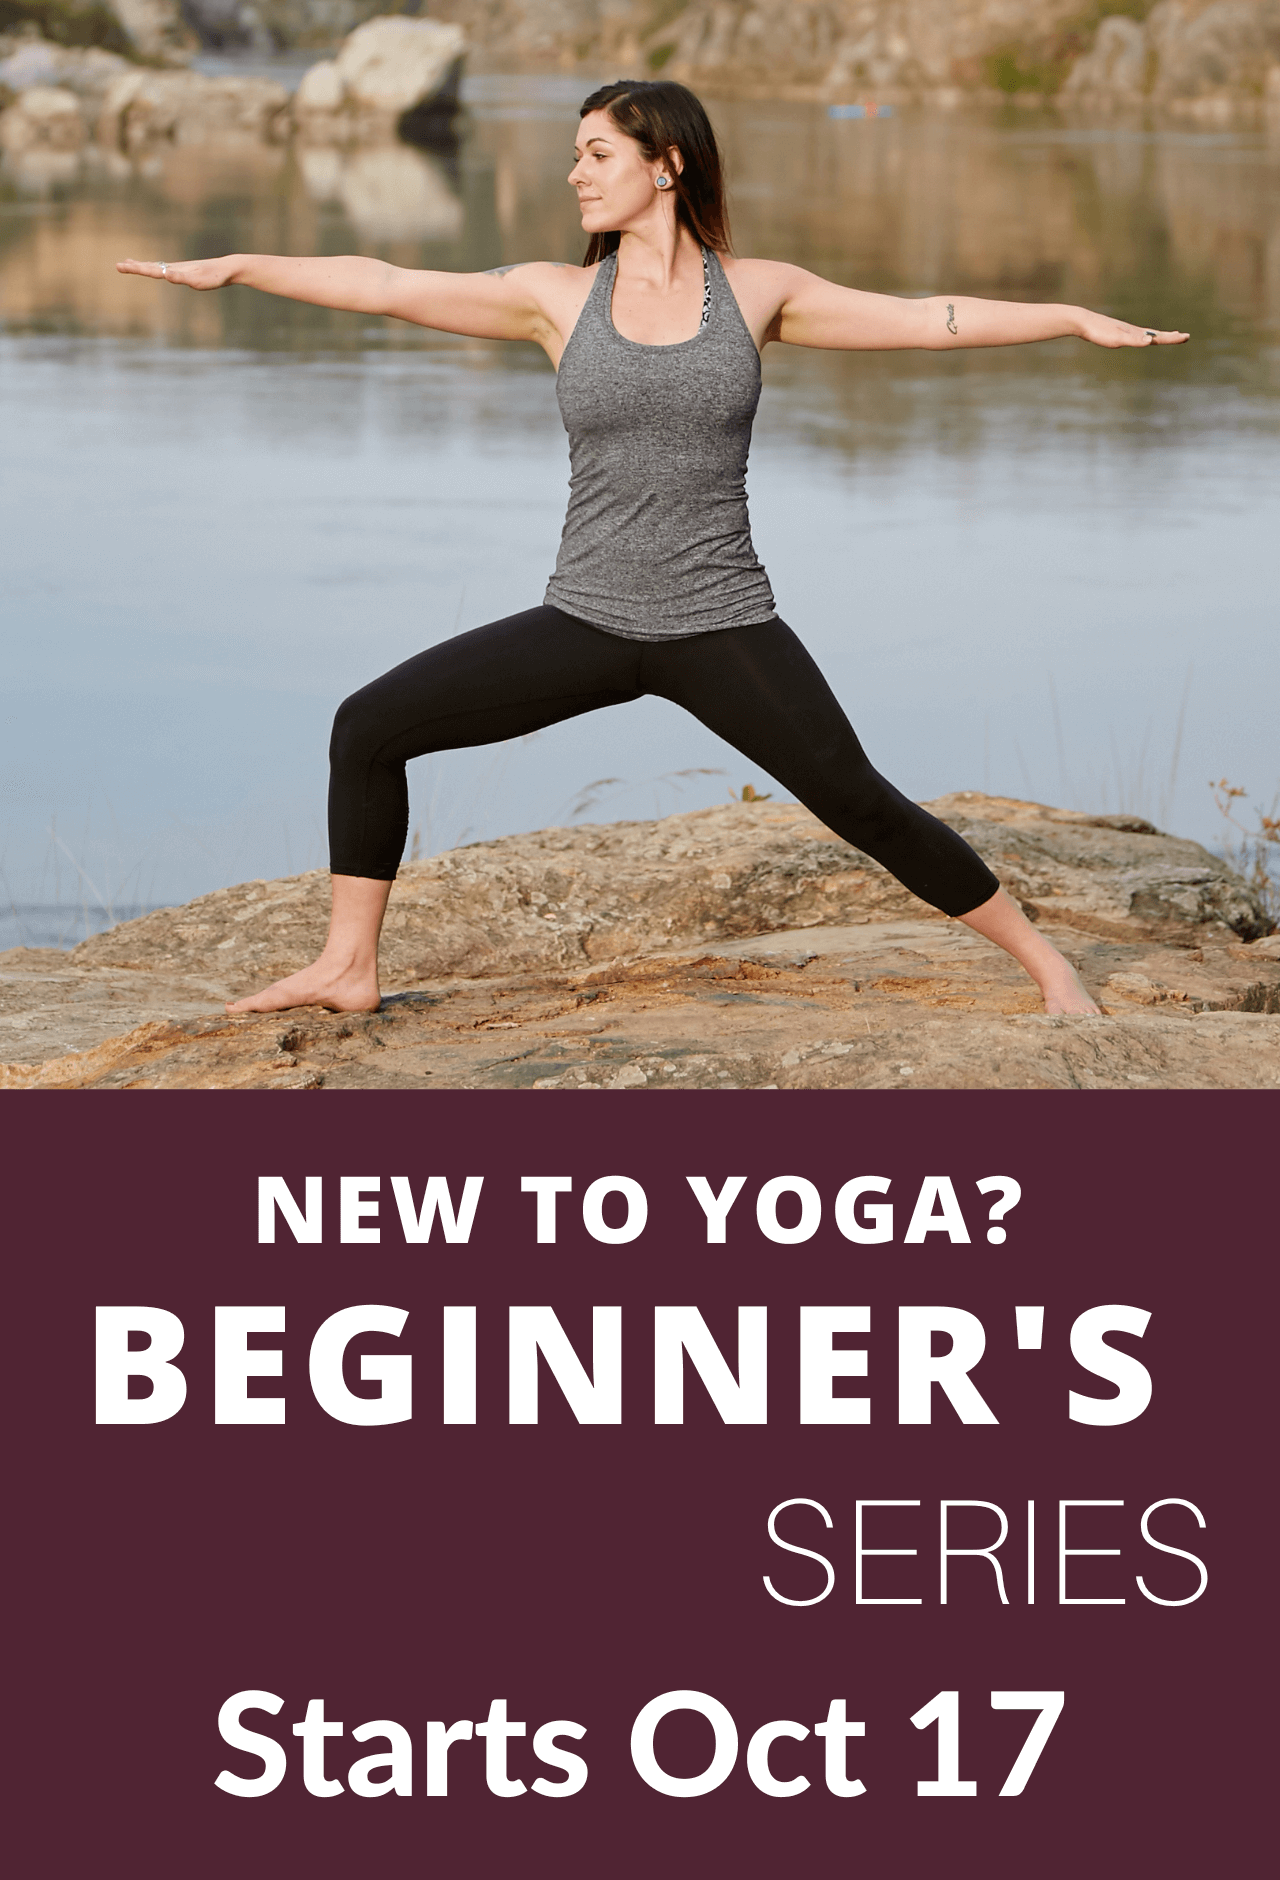 Yoga for Beginners Sacramento